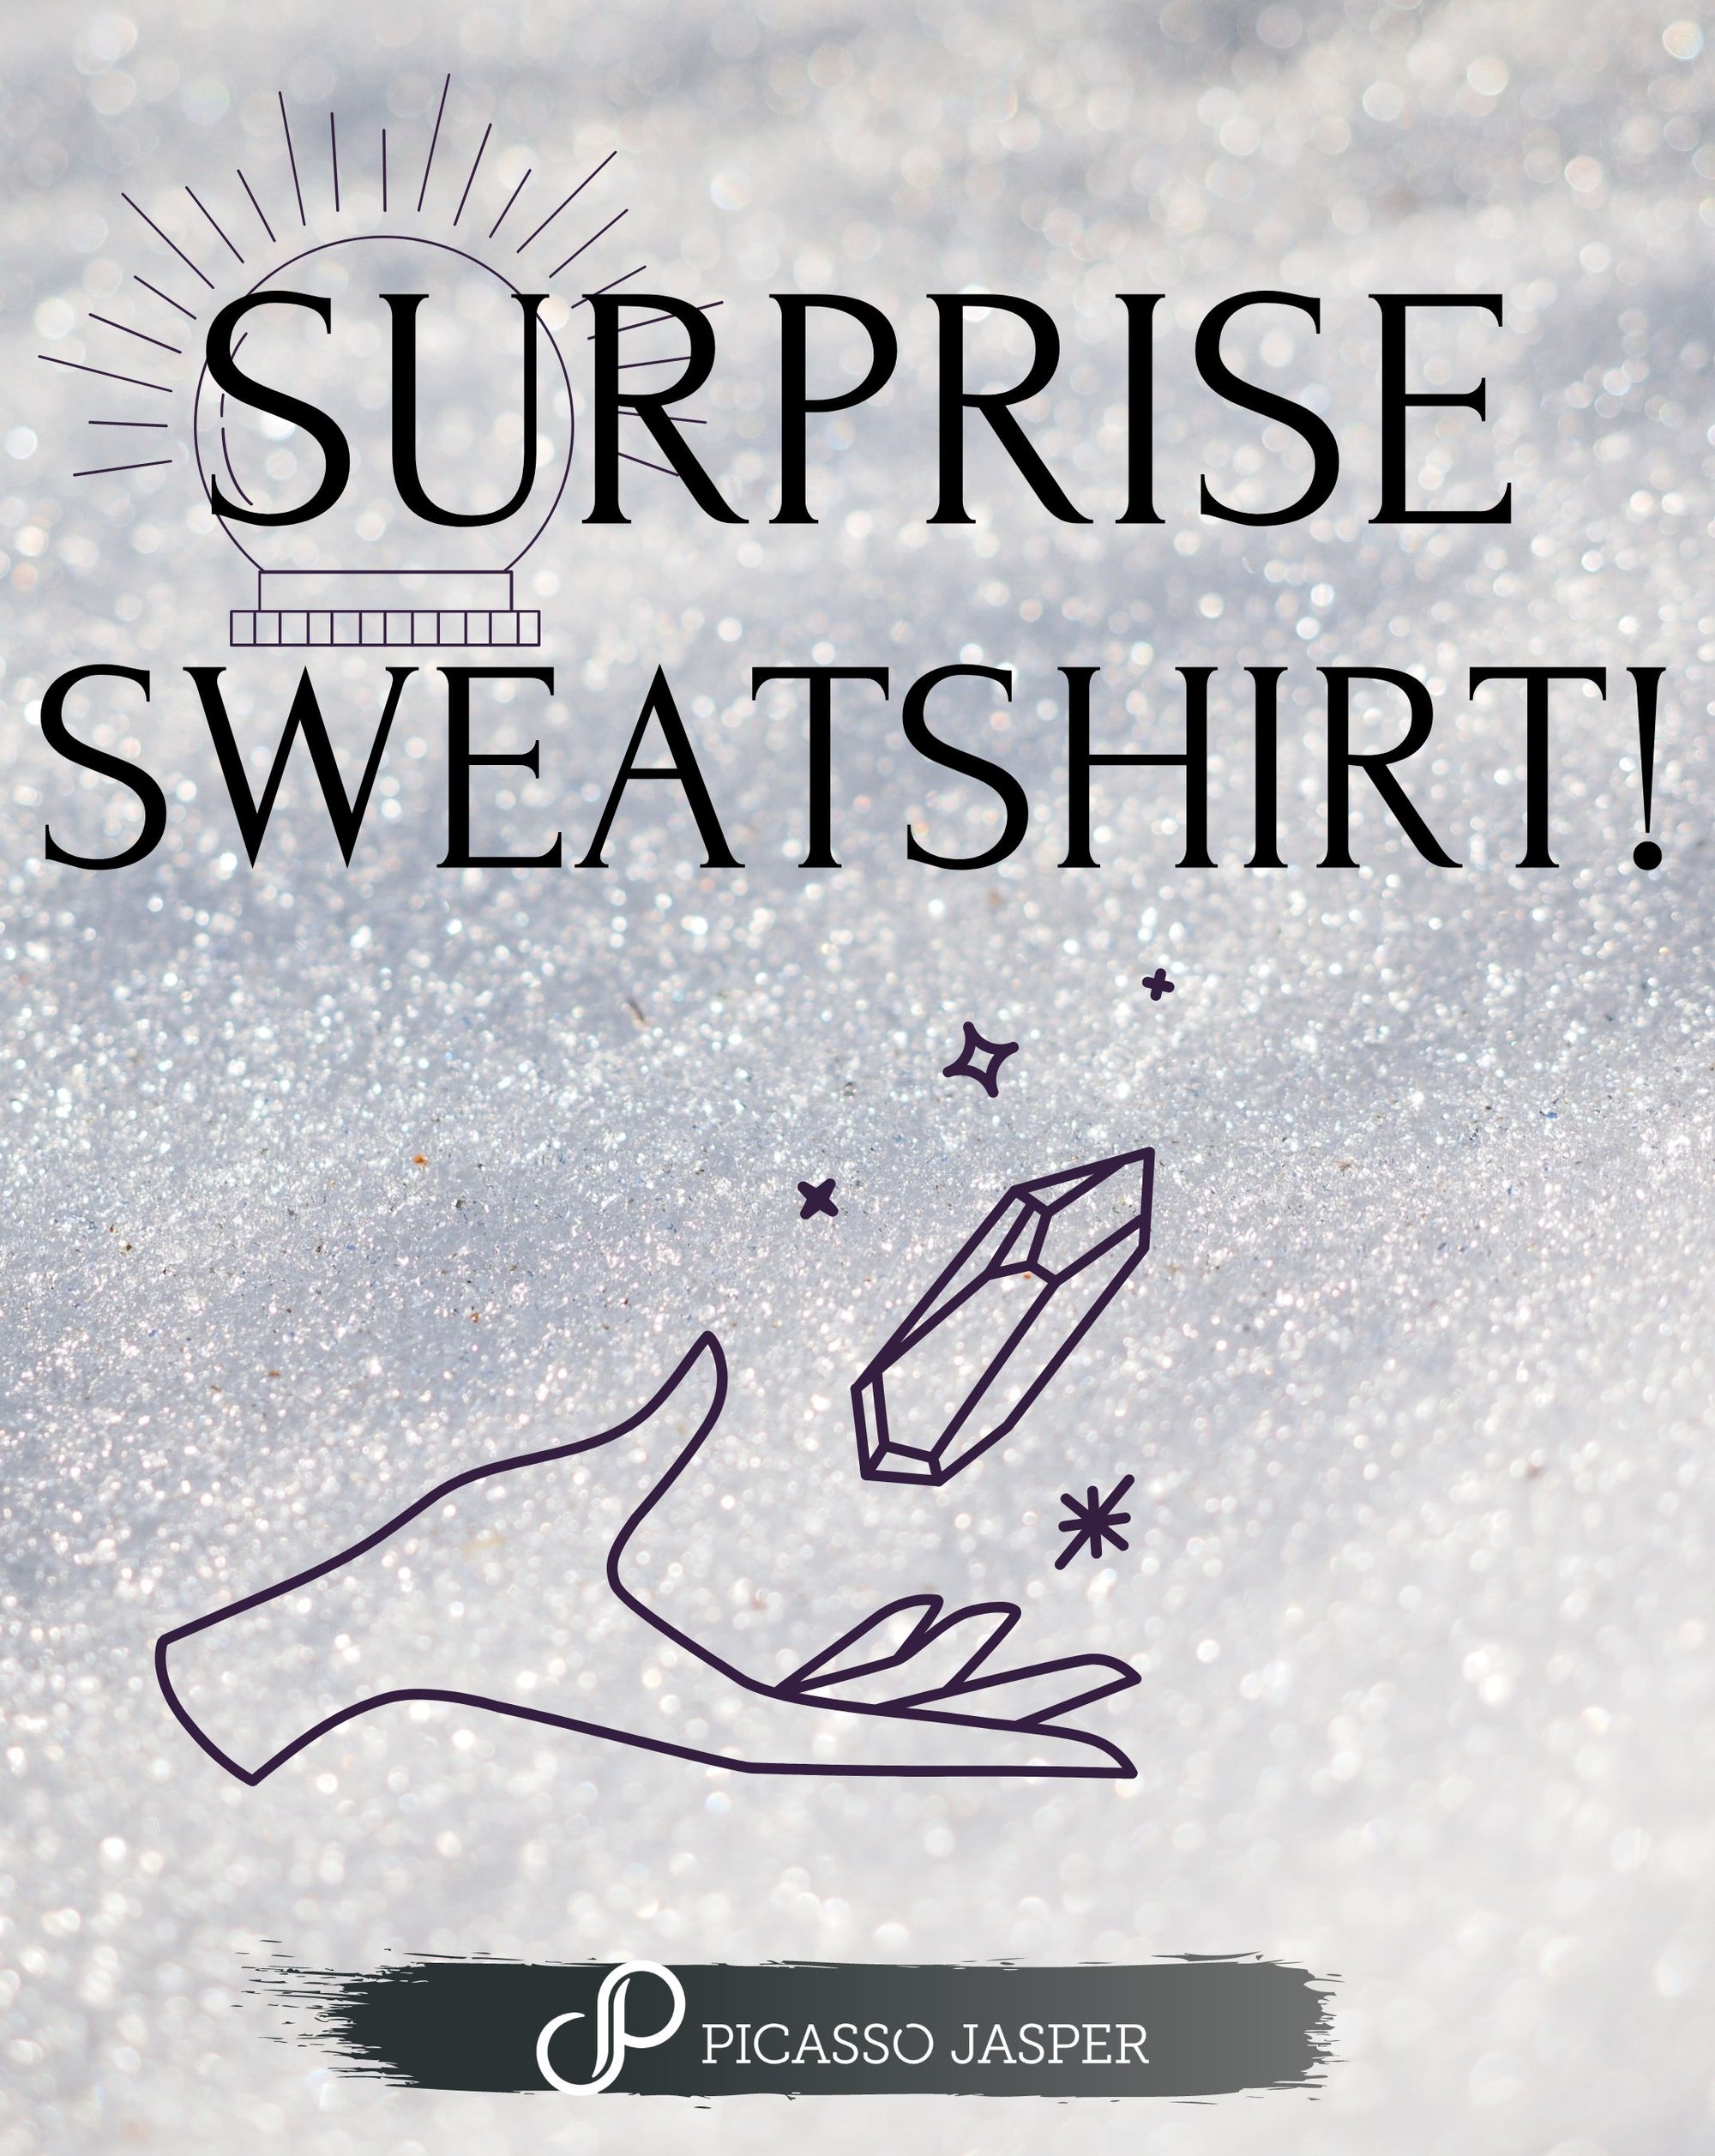 Surprise Sweatshirt!